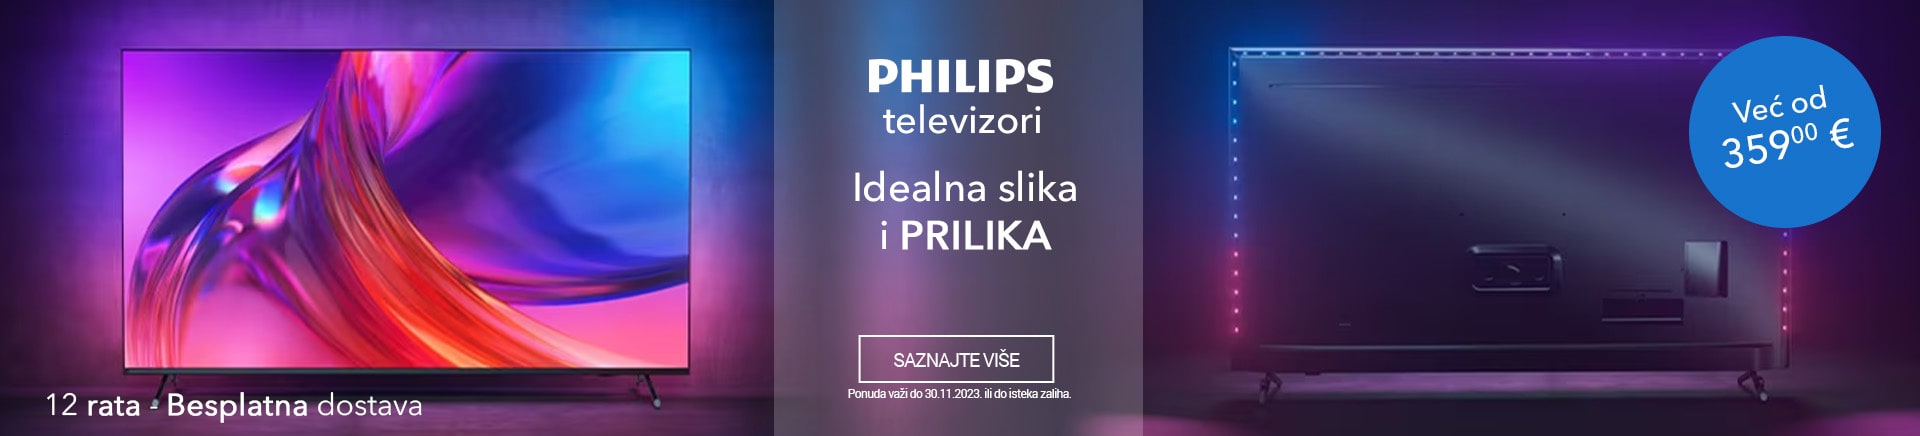 CG~Pronadi svoj PHILIPS televizor DESKTOP 1200 X 436-min.jpg